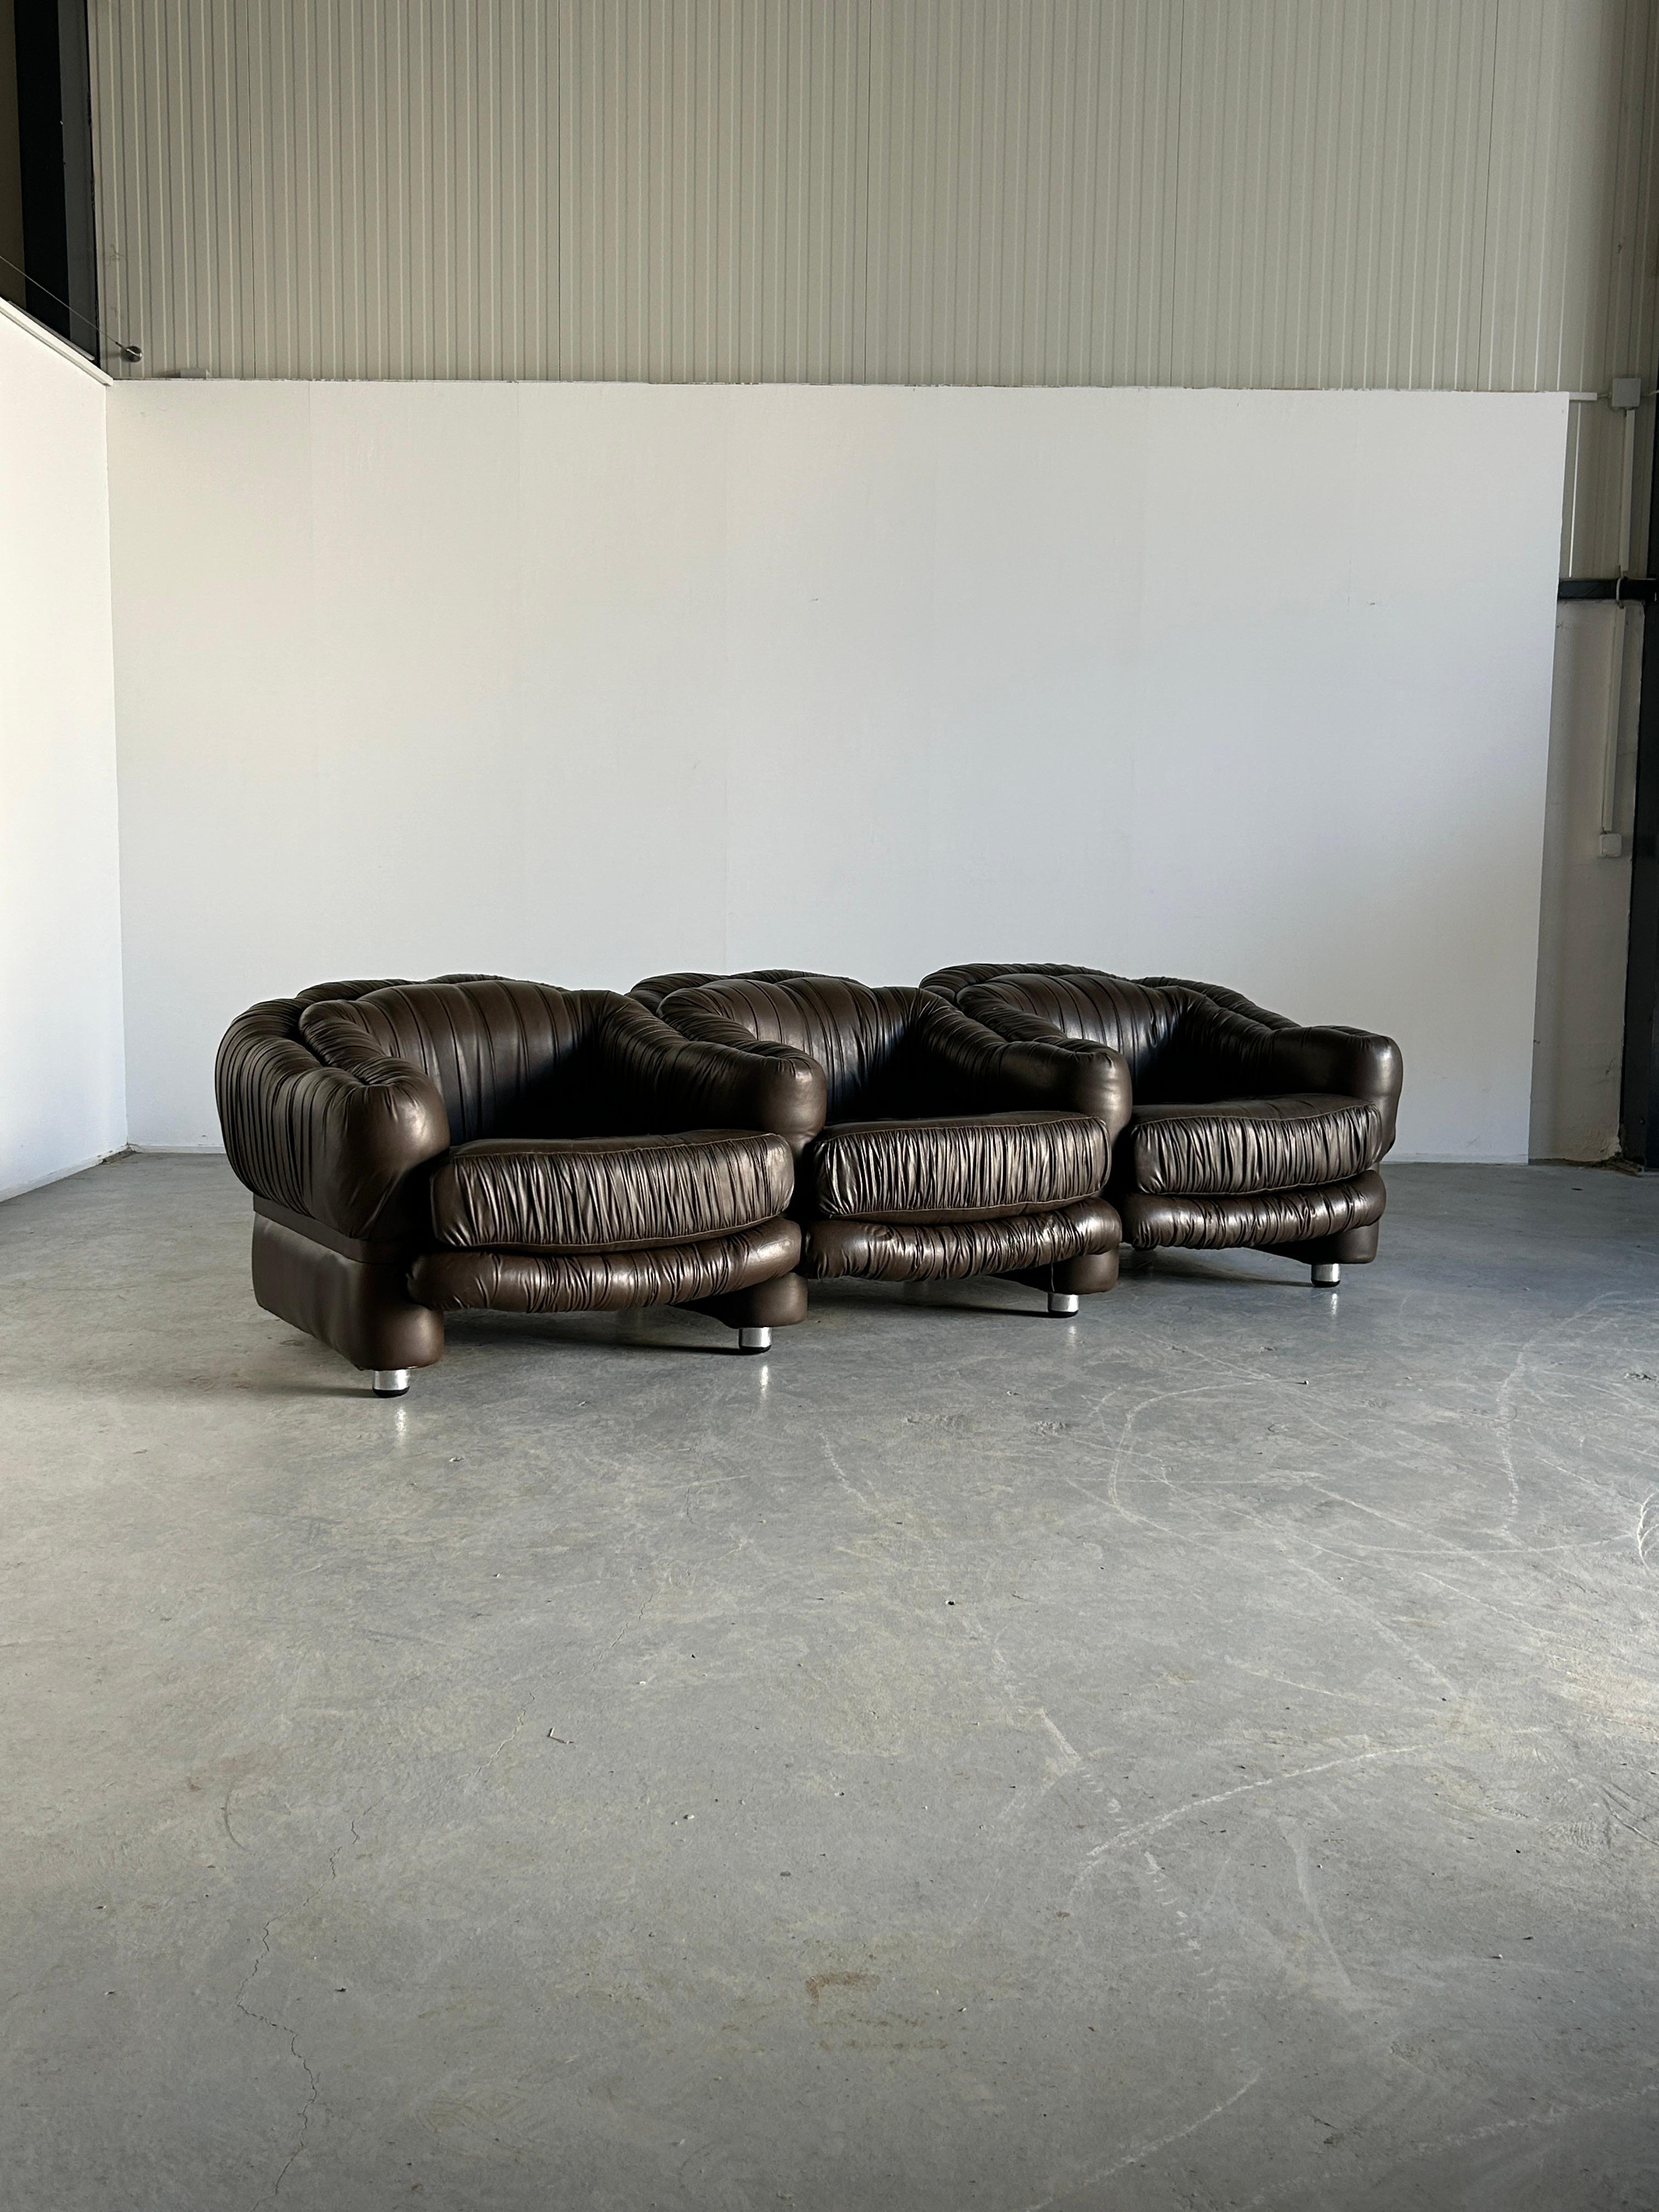 Atemberaubendes und seltenes dreisitziges Lounge-Sofa von Axel di Pietrobon, Italien der 1970er Jahre.
Dunkelbraunes Leder, Metallkonstruktion und verchromte Metallbeine.
Aus einem Stück gefertigt, nicht modular und nicht zerlegbar.

Insgesamt sehr